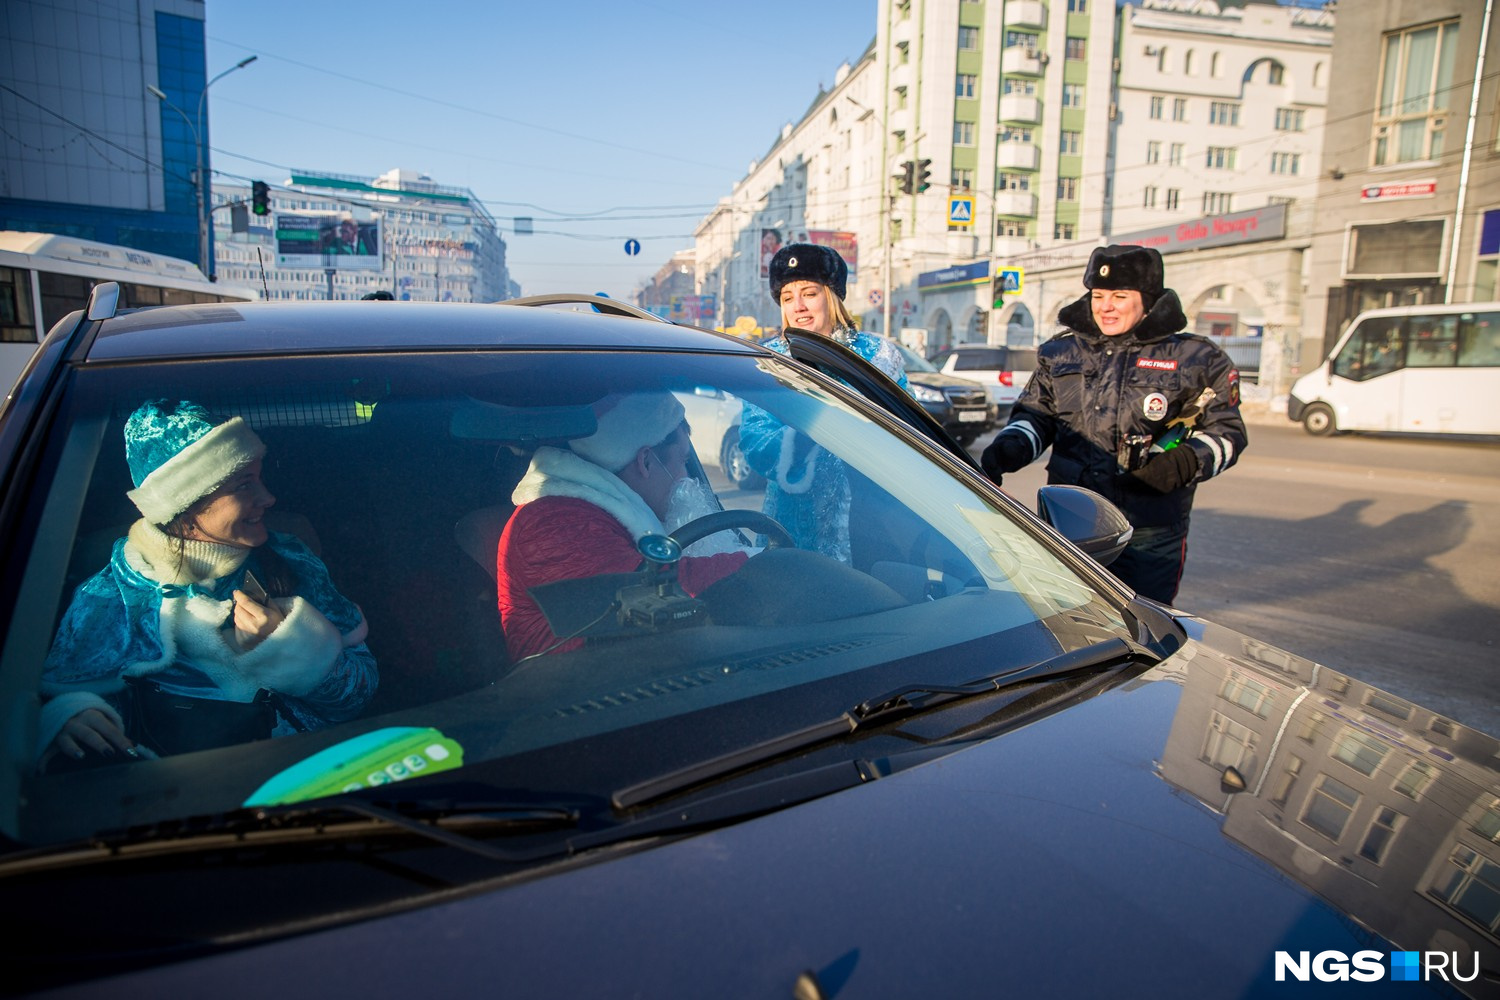 Полицейские Дед Мороз со Снегурочкой случайно встретились с гражданскими коллегами...